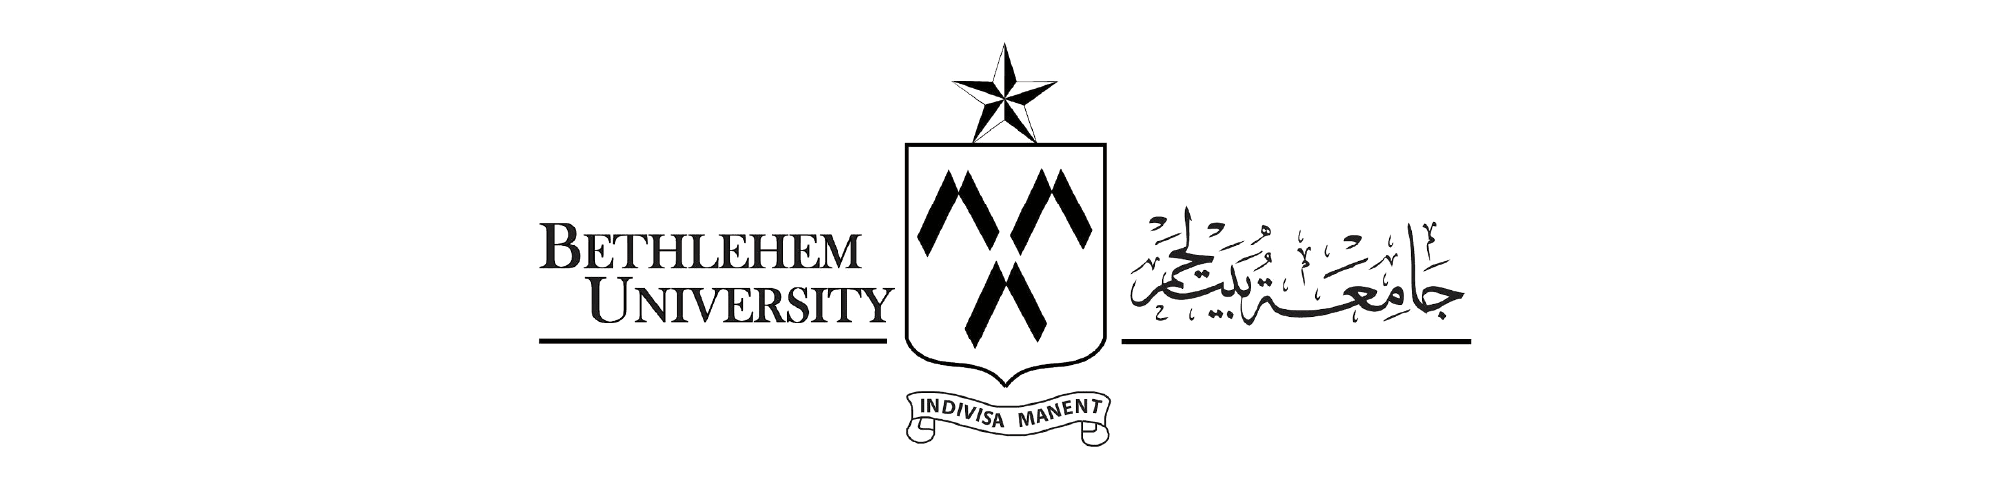 Logo der Bethlehem University